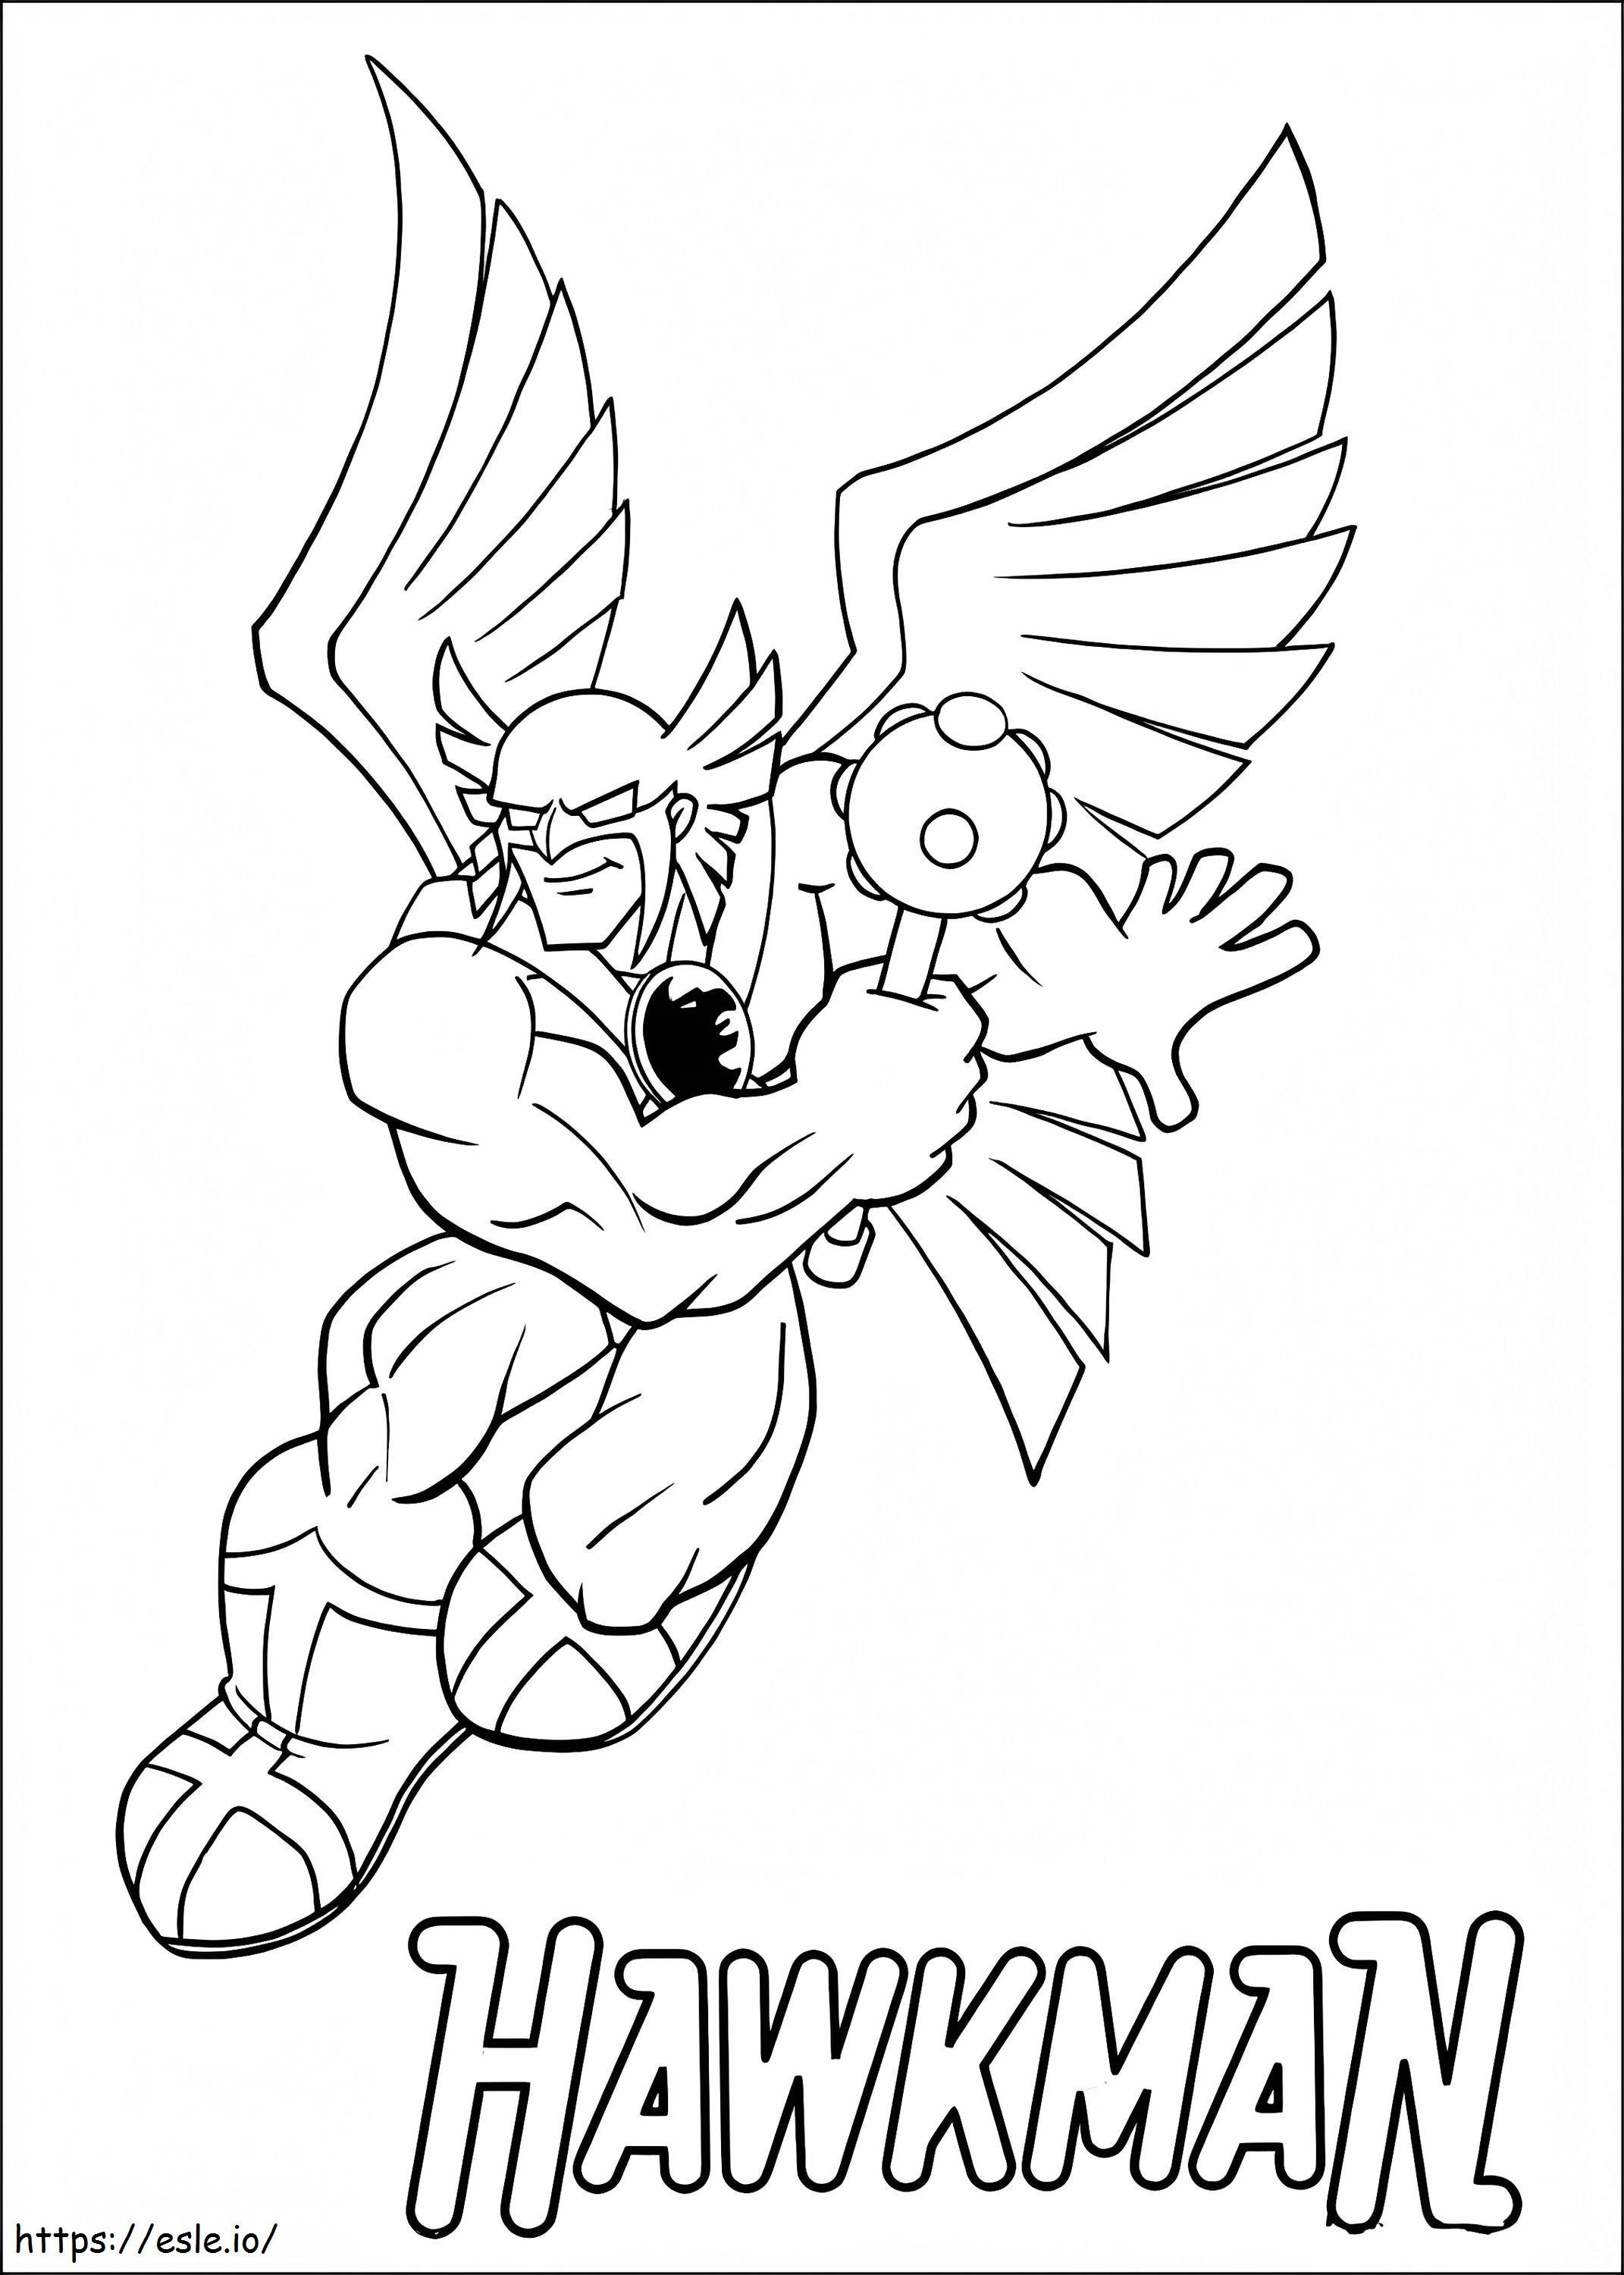 Hawkman von Super Friends ausmalbilder